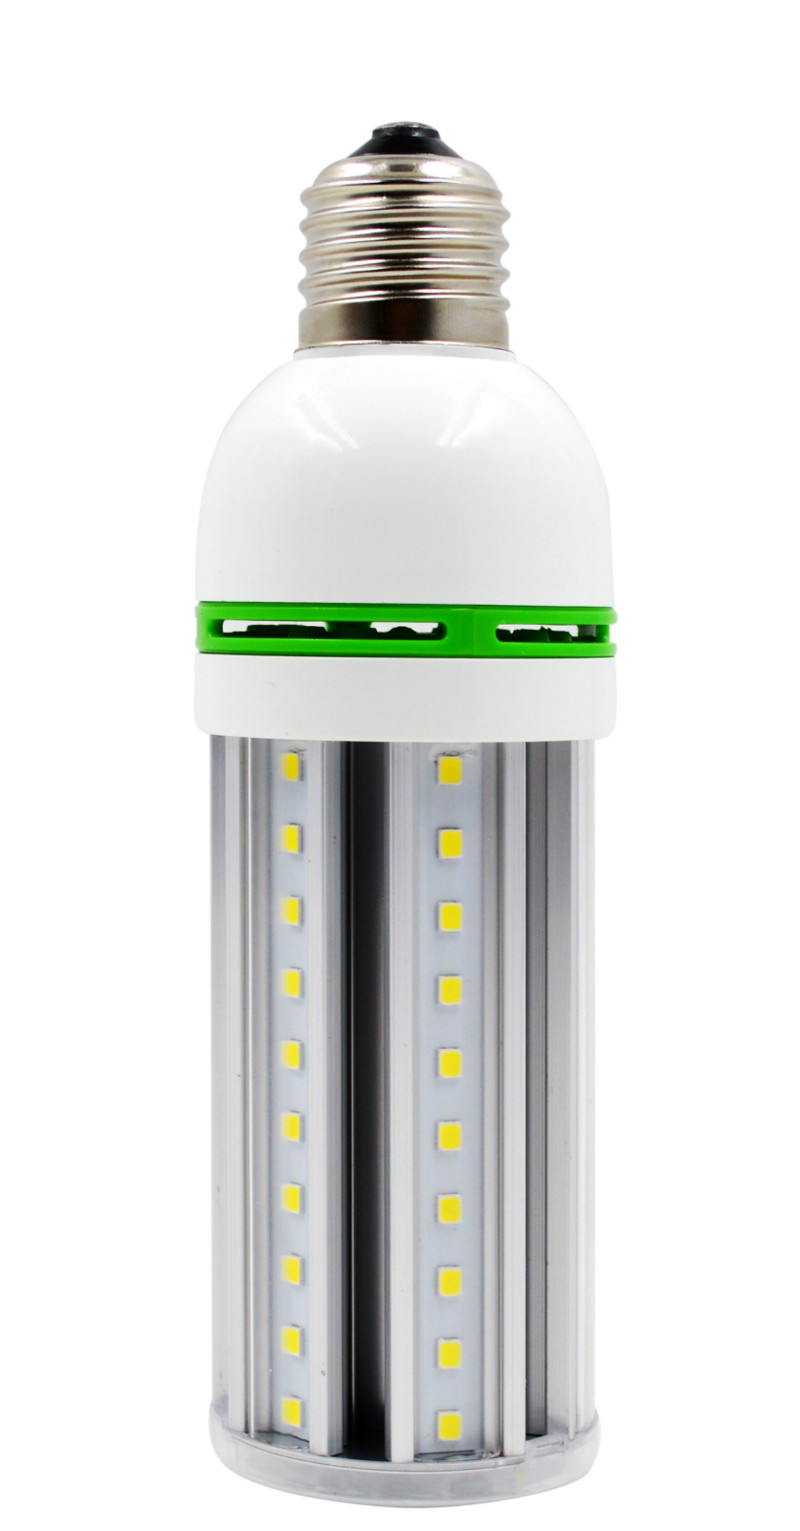 LED玉米灯10W带罩玉米灯LED庭院灯LED草坪灯10W景观灯10WLED横插玉米灯